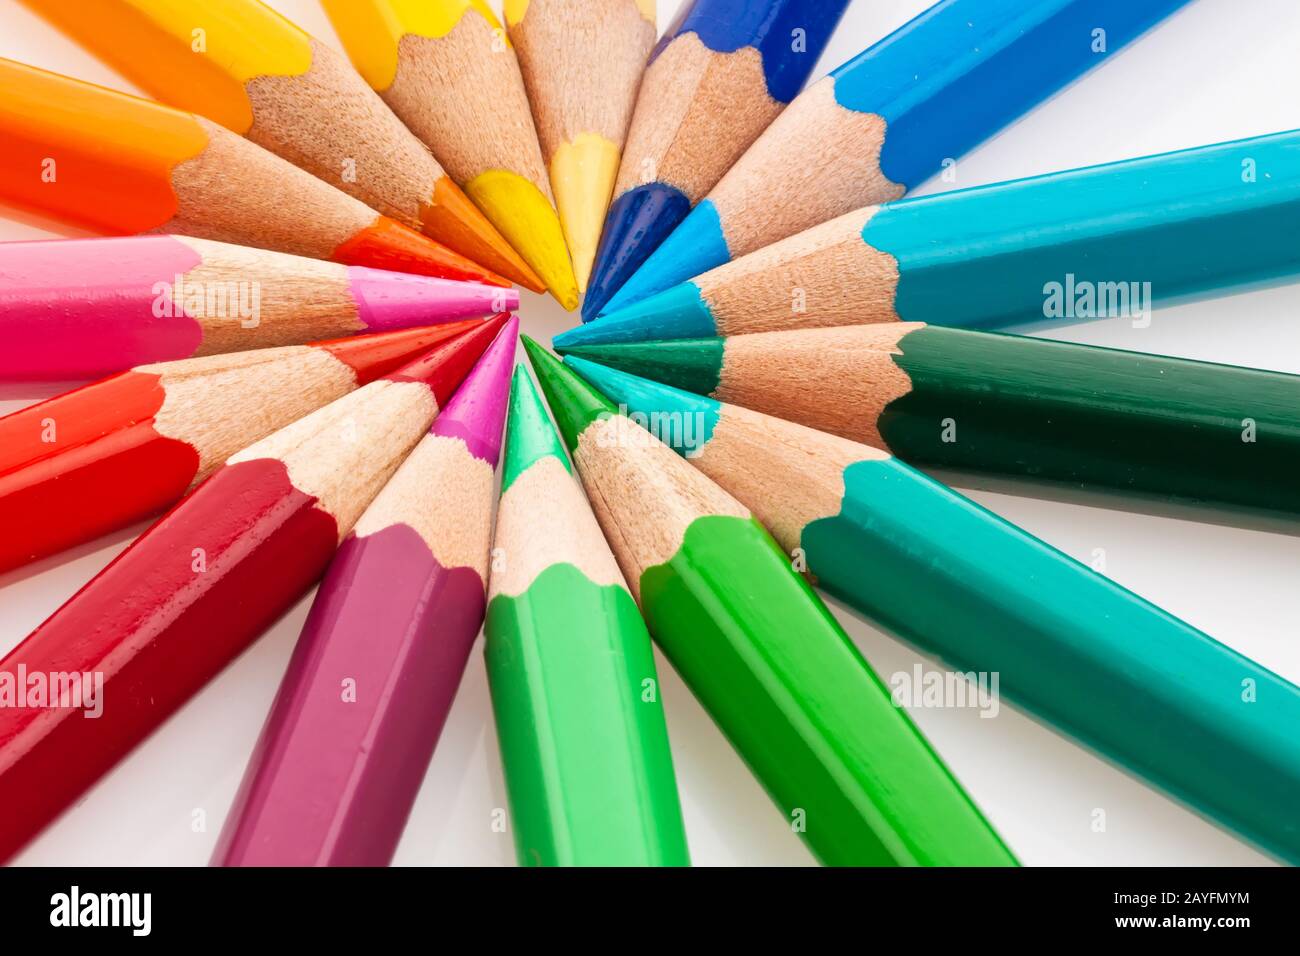 Viele verschiedene bunte Farbstifte auf einem weissem Hintergrund. Stock Photo